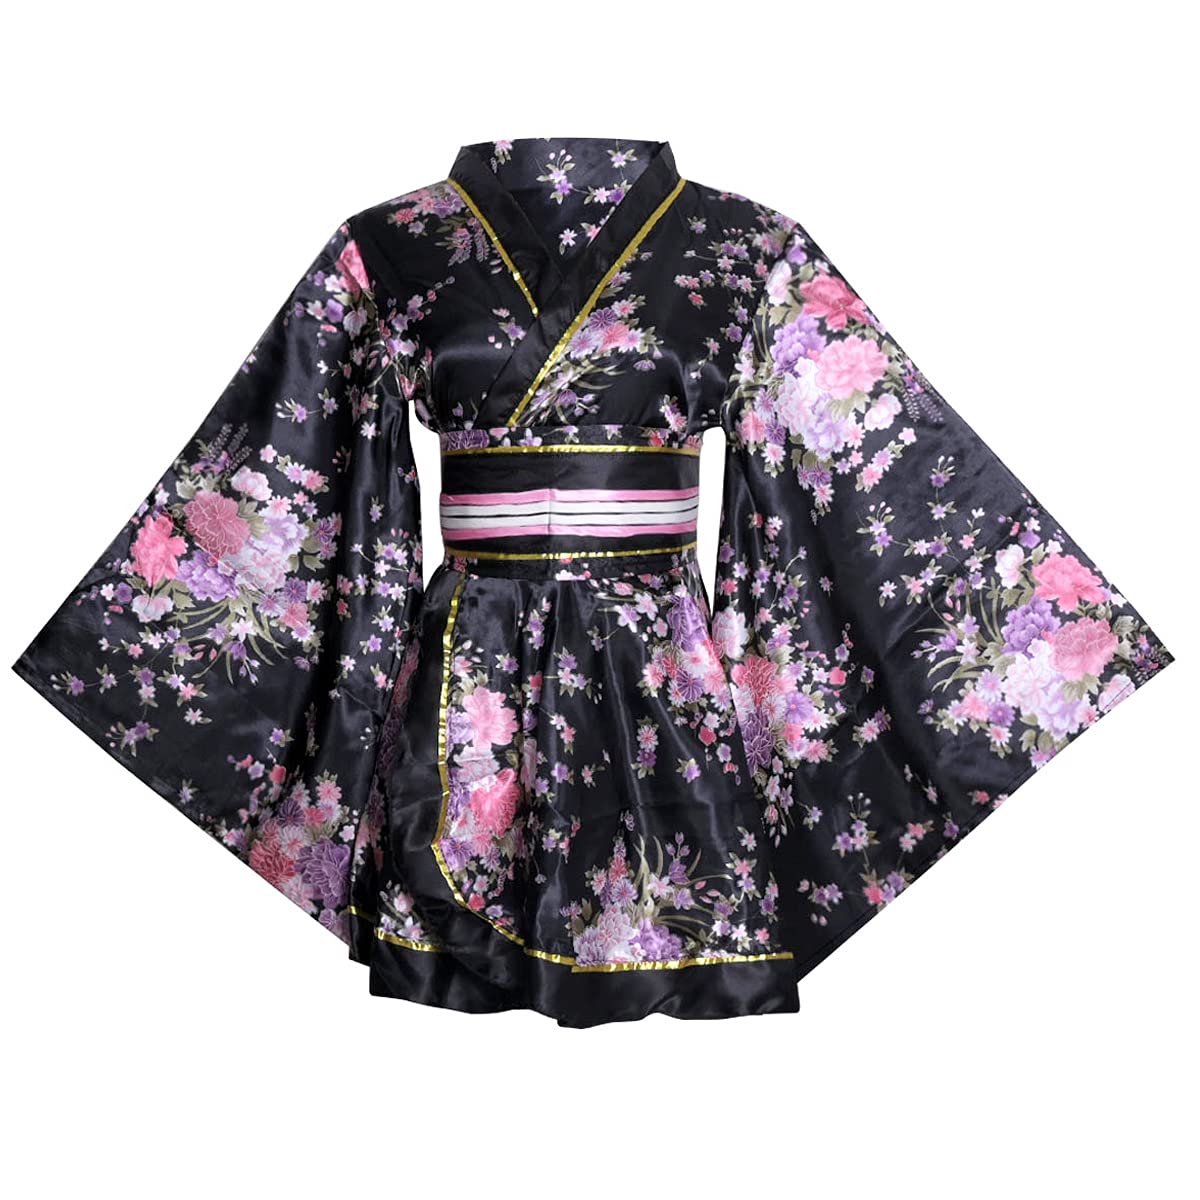 HUAHUA Damen Sexy Kurz Kimono Kleid Blumendruck Japanische Traditionelle Geisha Yukata Bademantel Rock Gürtel Outfit, D02-schwarz, Einheitsgröße